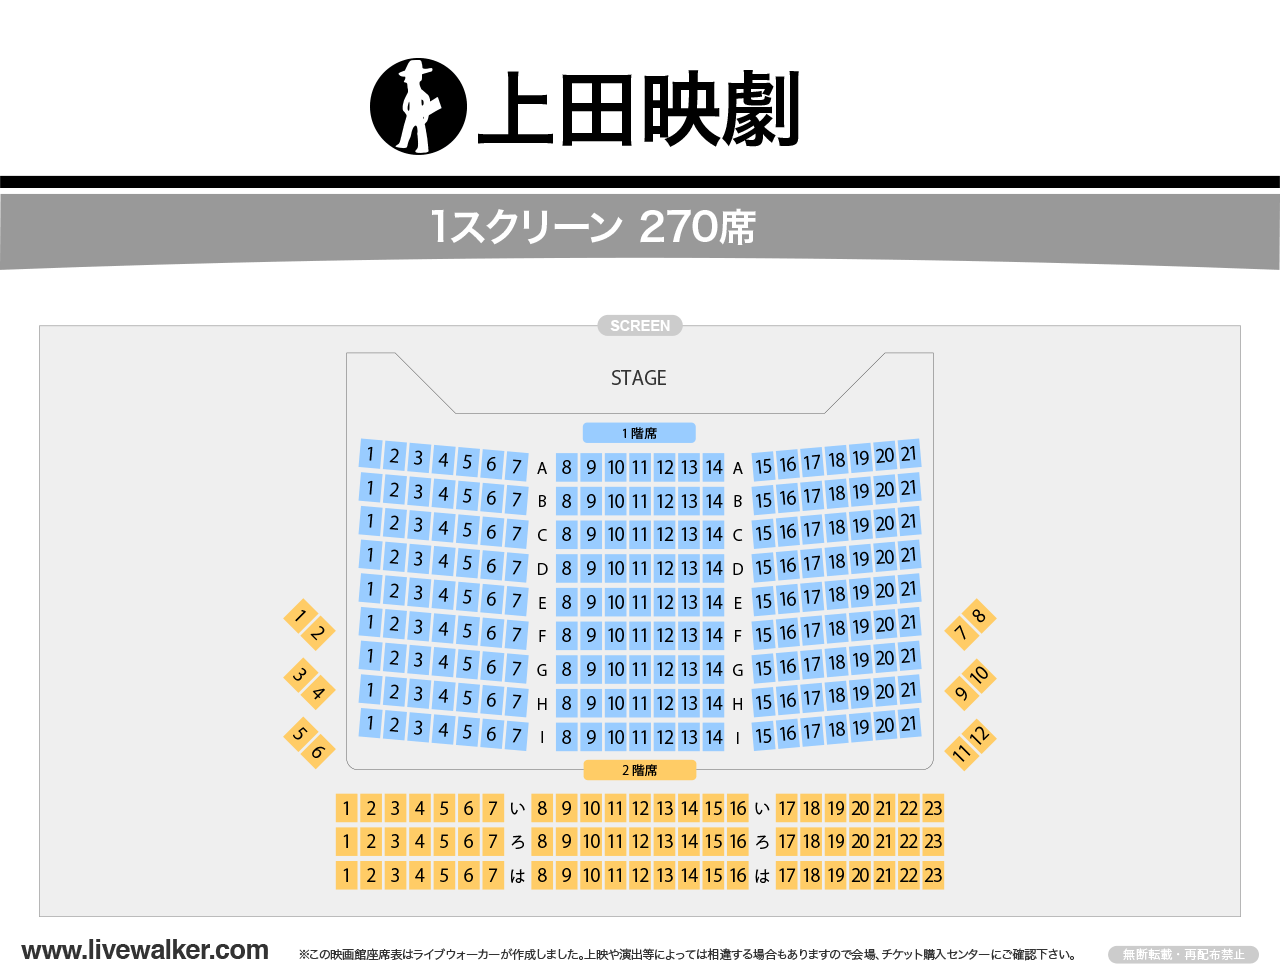 上田映劇ホールの座席表